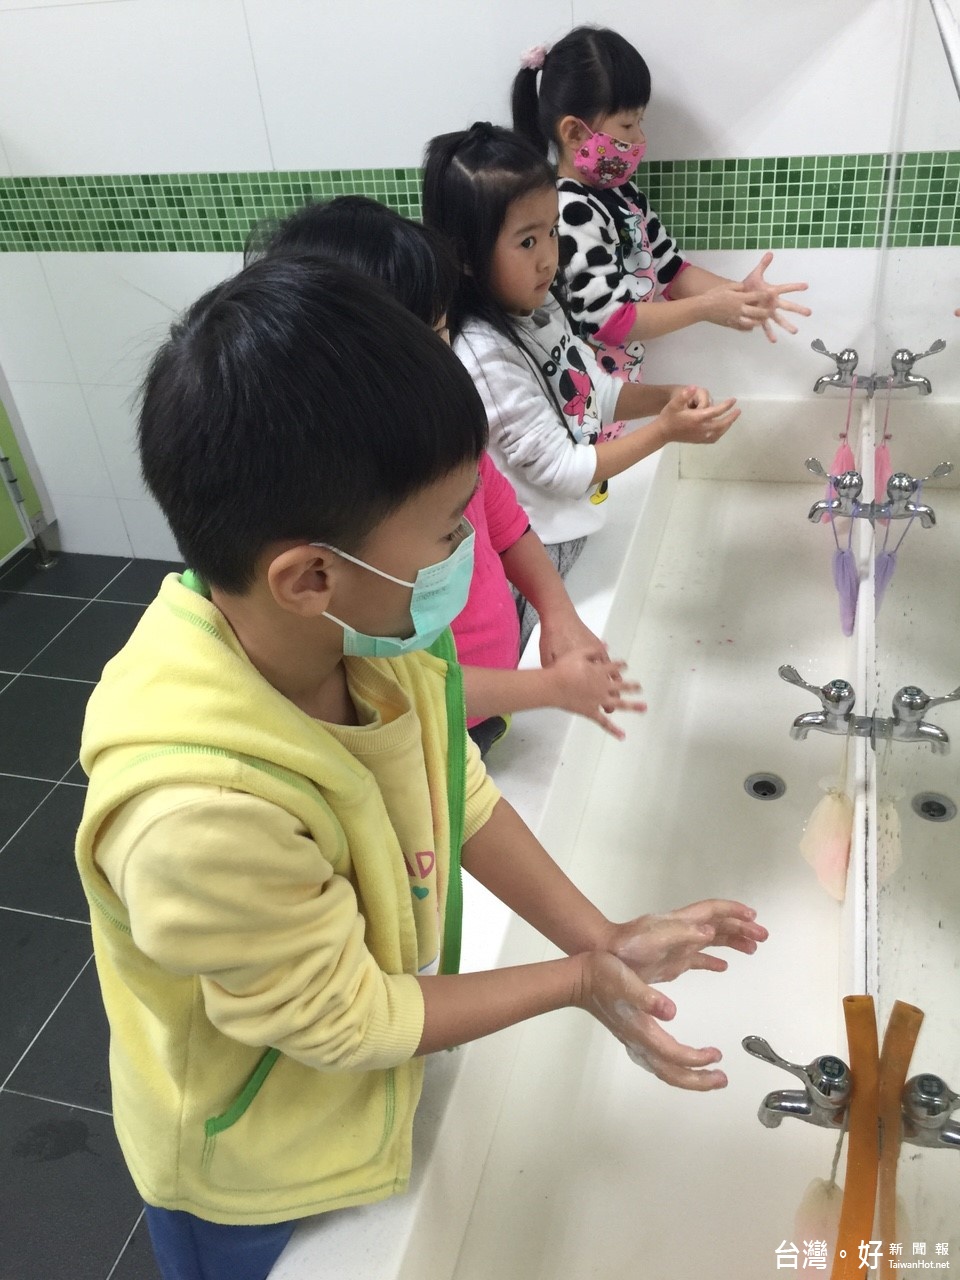 衛生局提醒民眾應注意個人衛生、落實正確洗手，避免生飲生食。